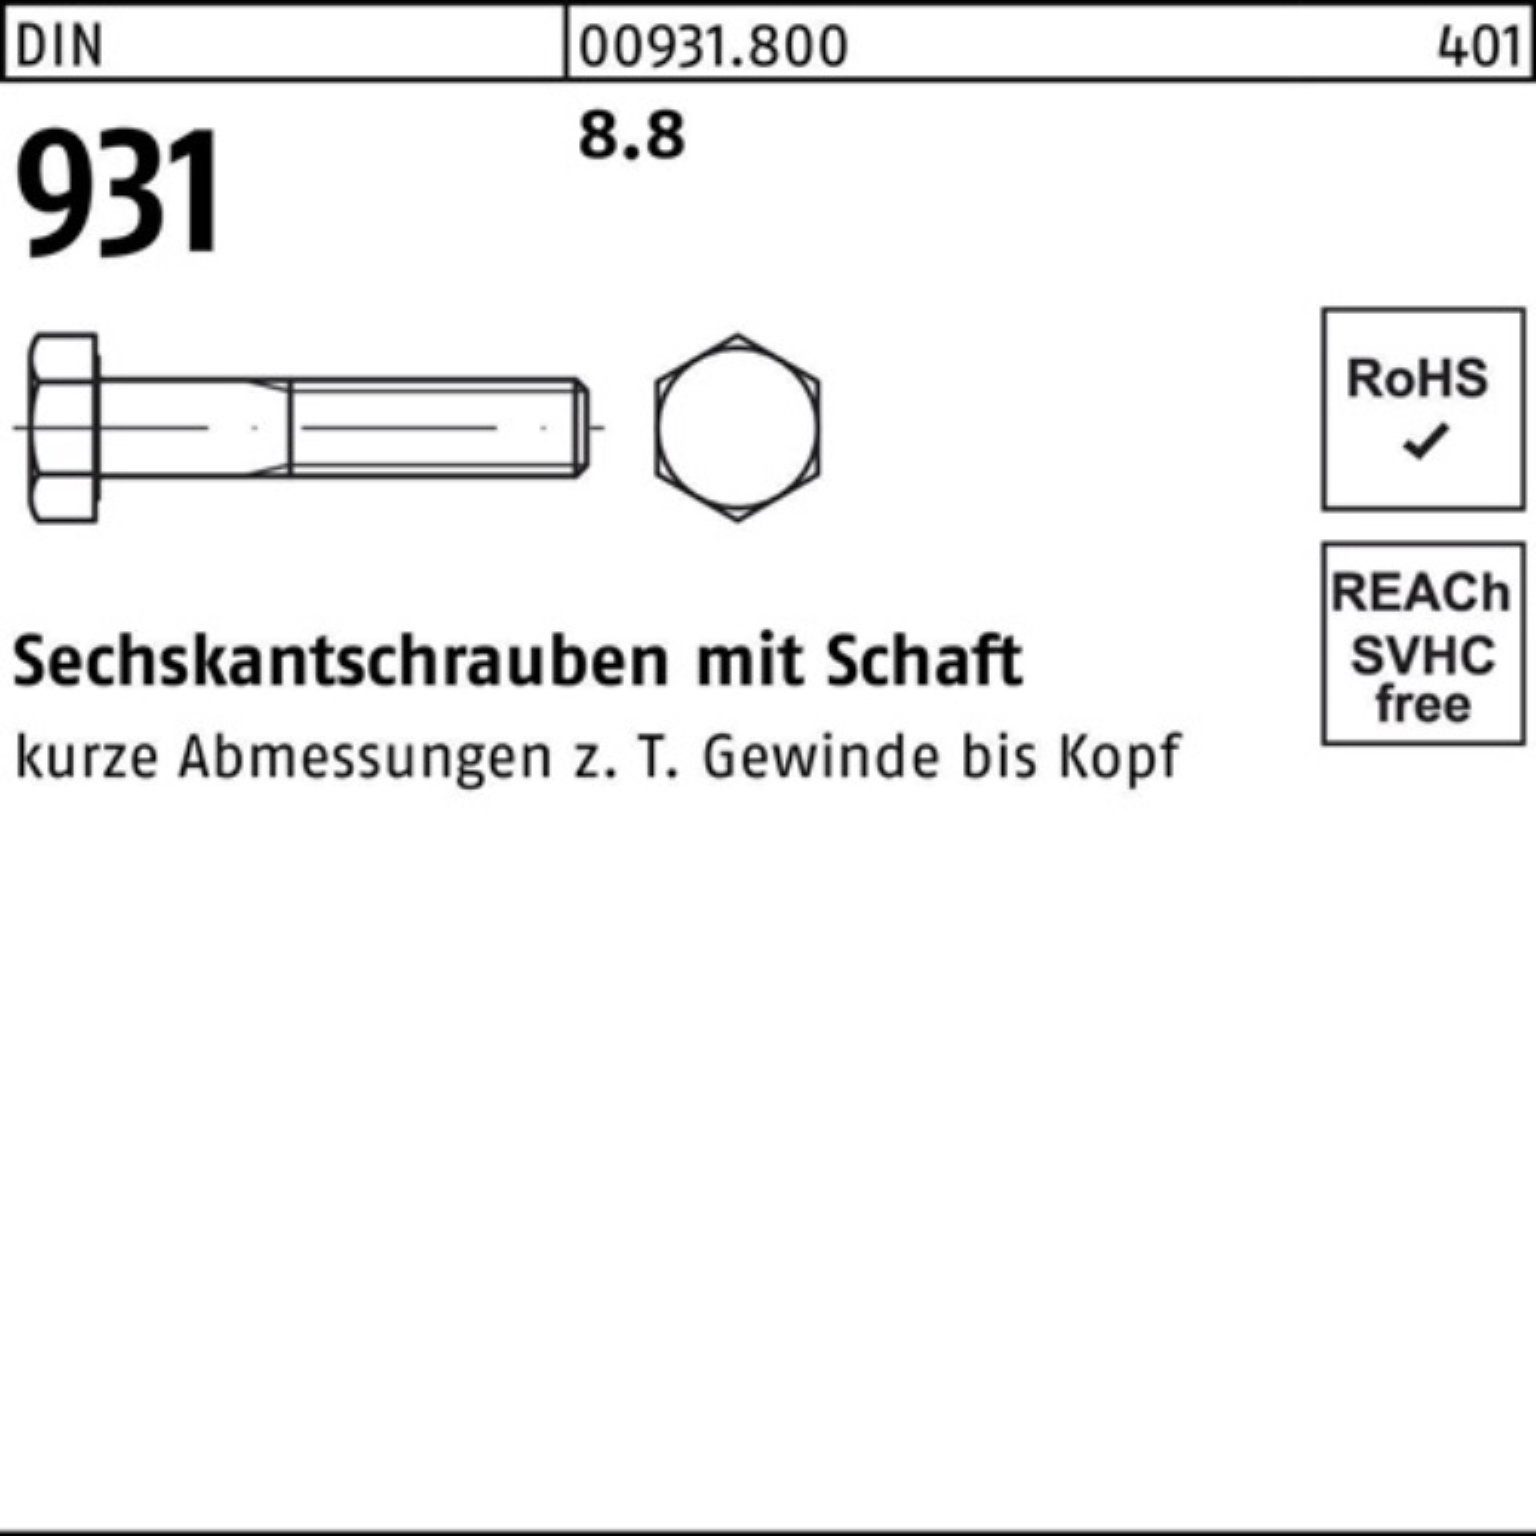 8.8 120 DIN Schaft 1 Sechskantschraube 100er Stück Reyher Sechskantschraube Pack 931 DIN M45x